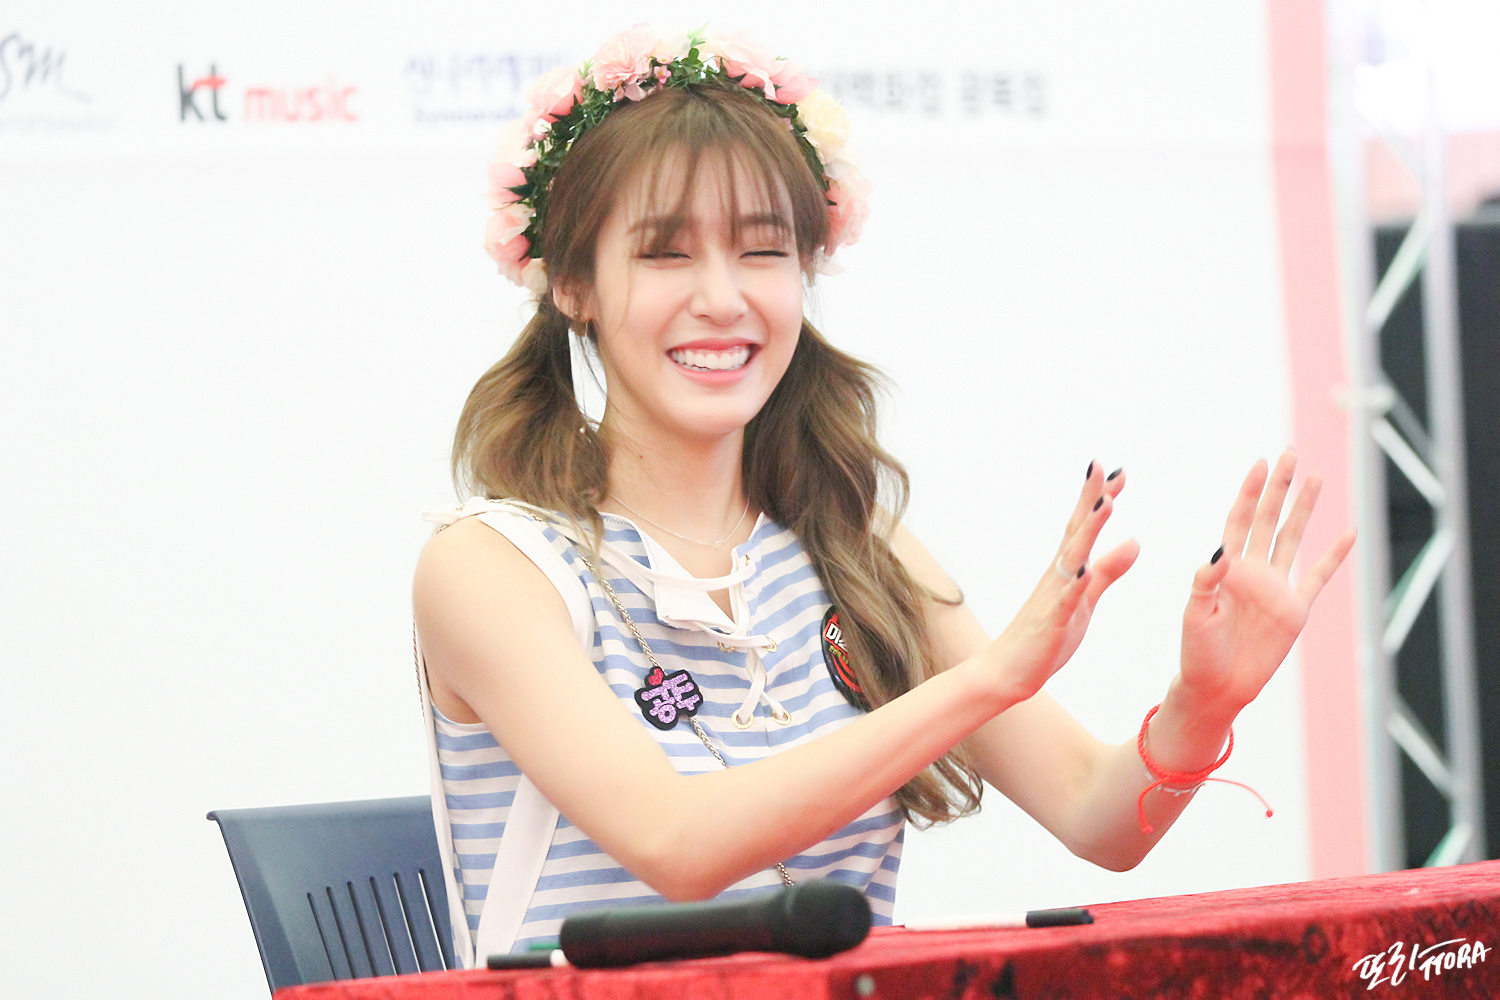 [PIC][06-06-2016]Tiffany tham dự buổi Fansign cho "I Just Wanna Dance" tại Busan vào chiều nay - Page 5 233E833C579F5DF121B3D8